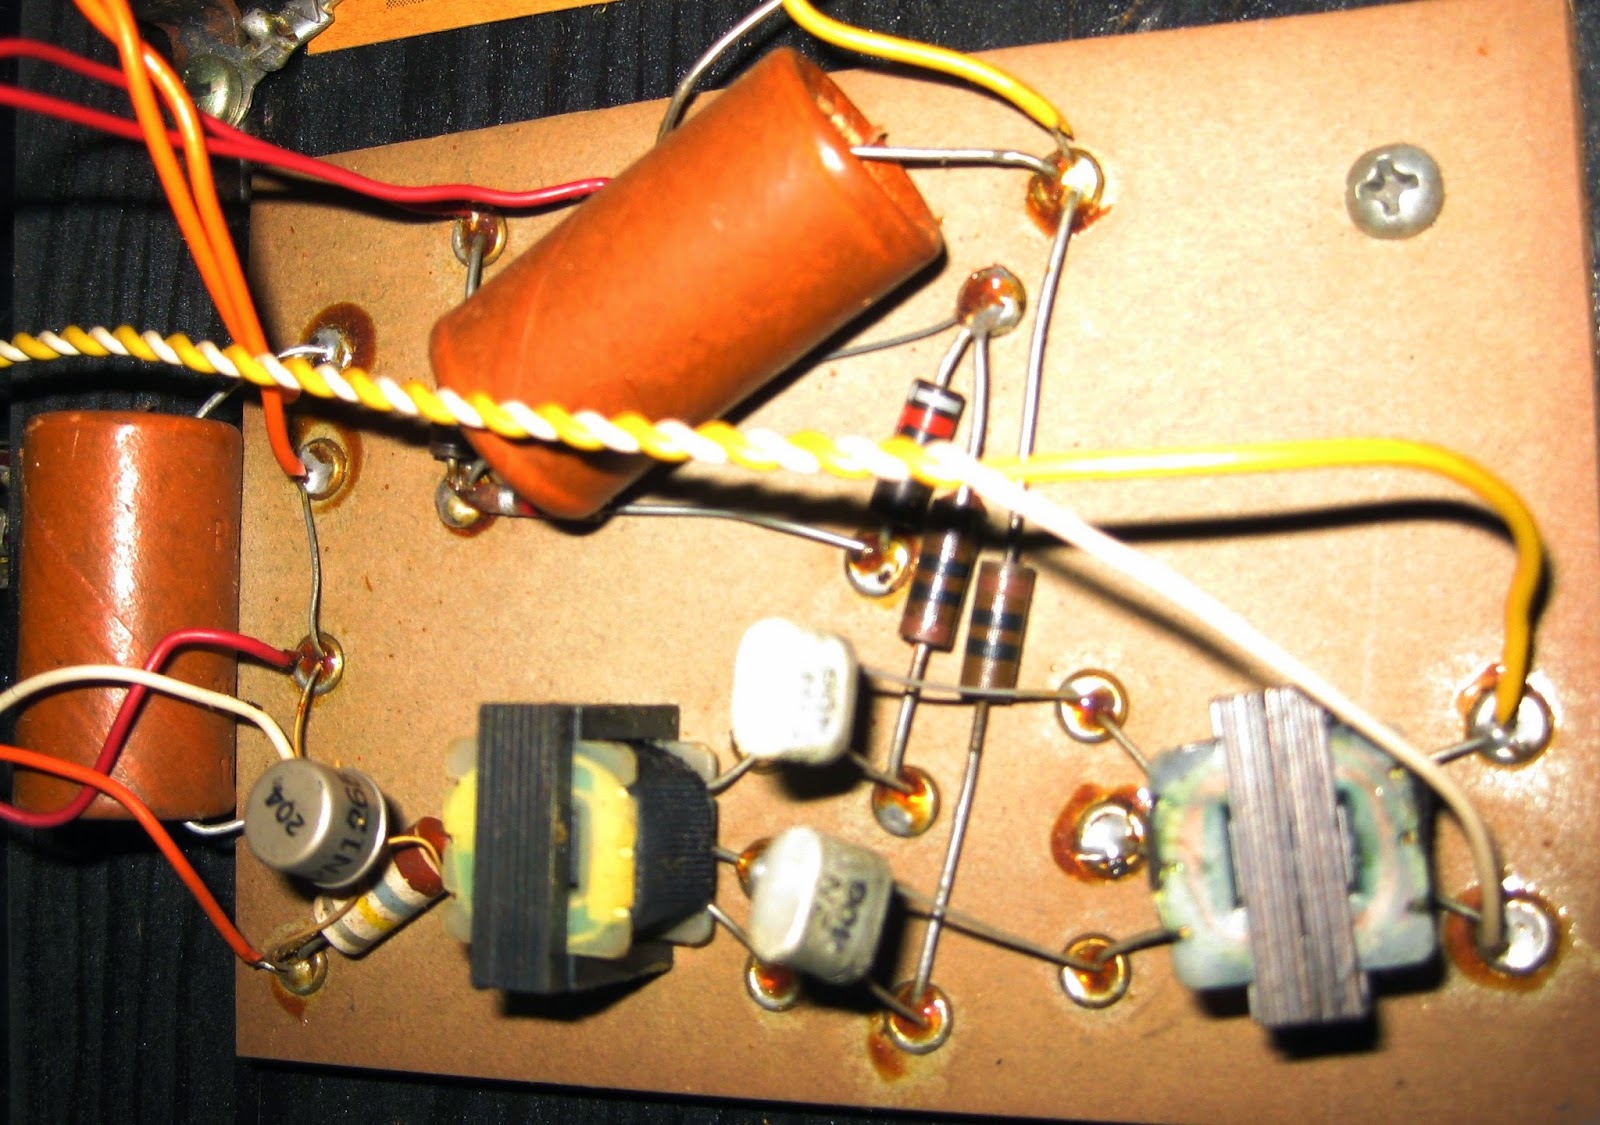 DIY guitar amp hacks: June 2014